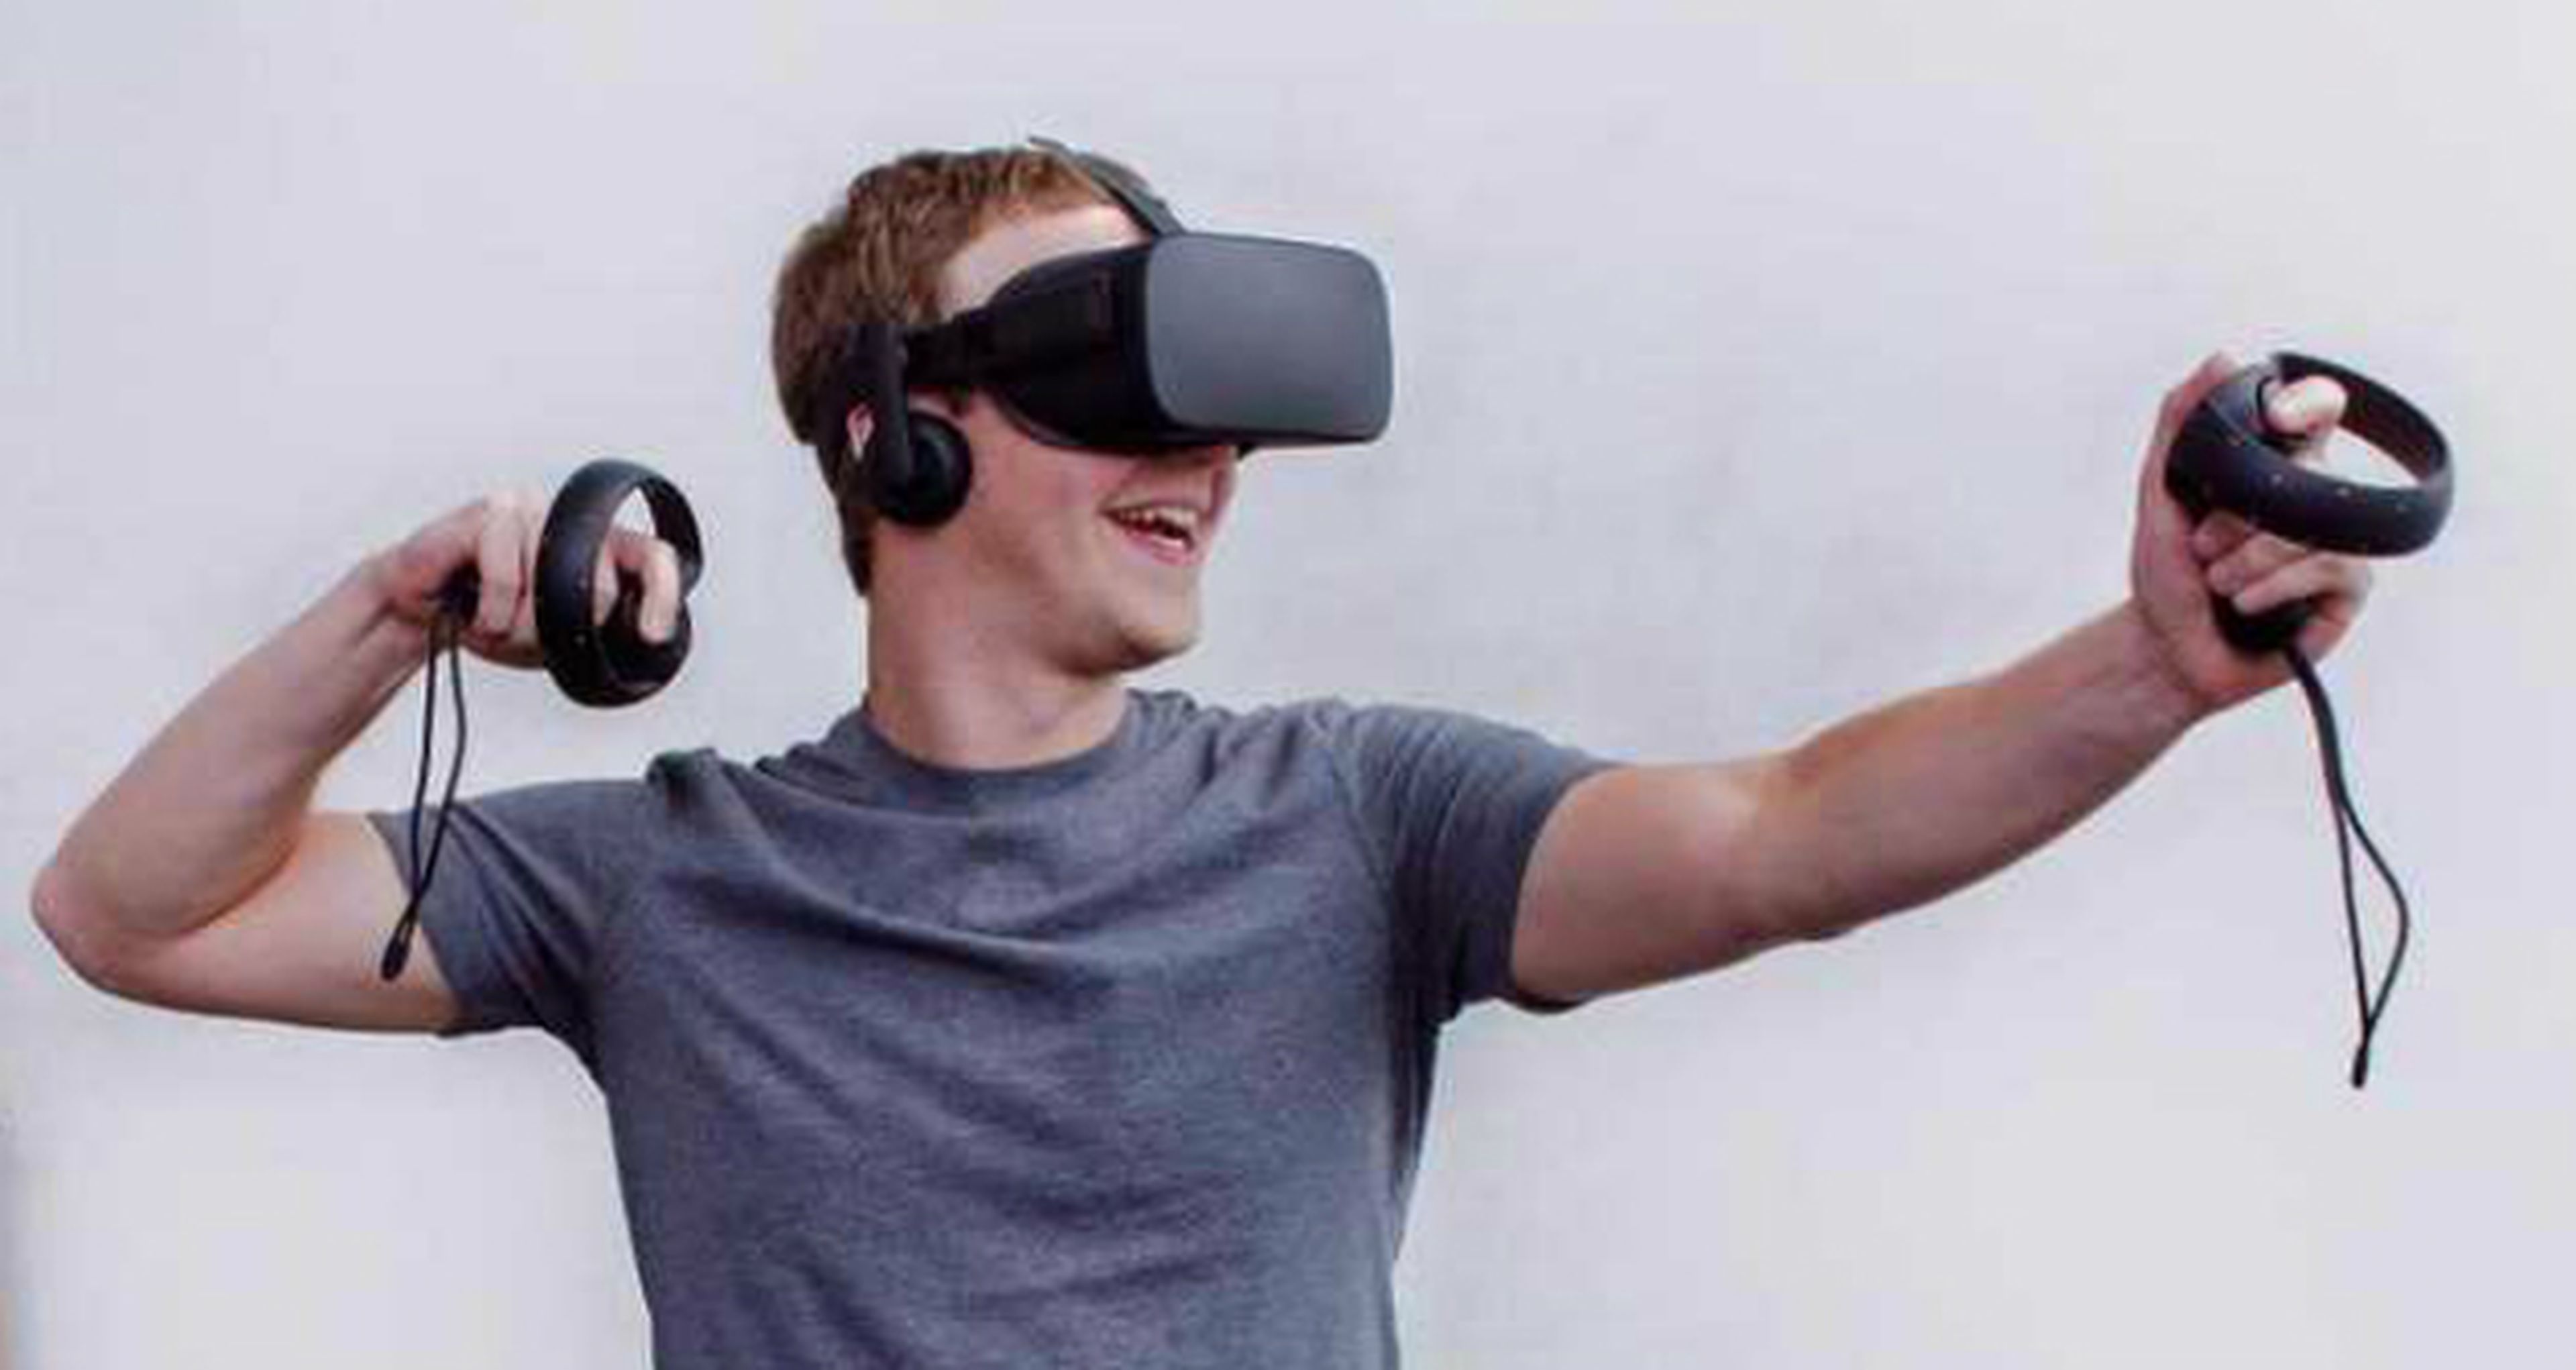 Realidad Virtual - Mark Zuckerberg, creador de Facebook, opina sobre su futuro